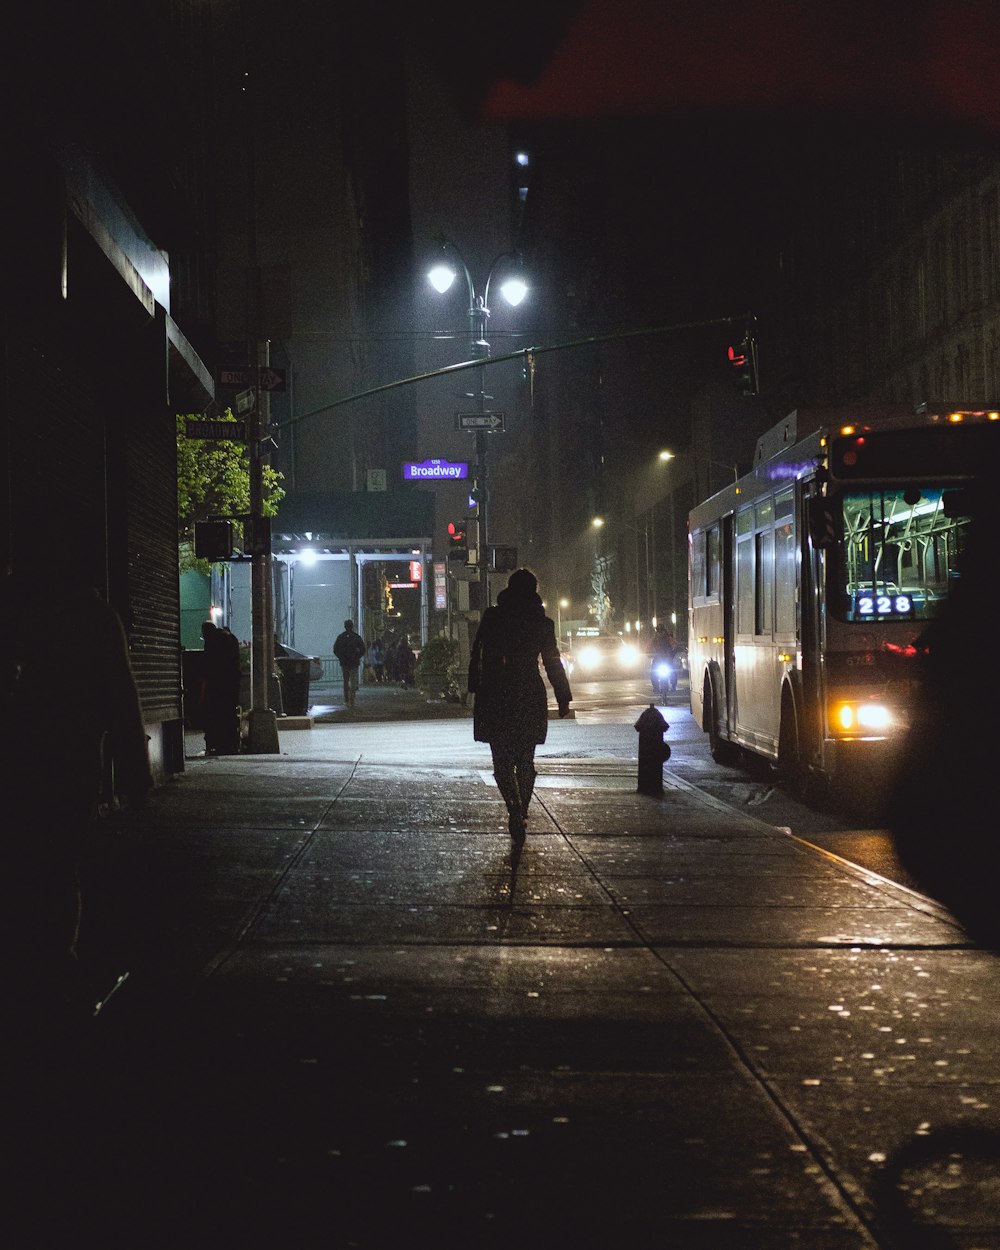 pessoa andando na via perto de ônibus e veículos durante a noite